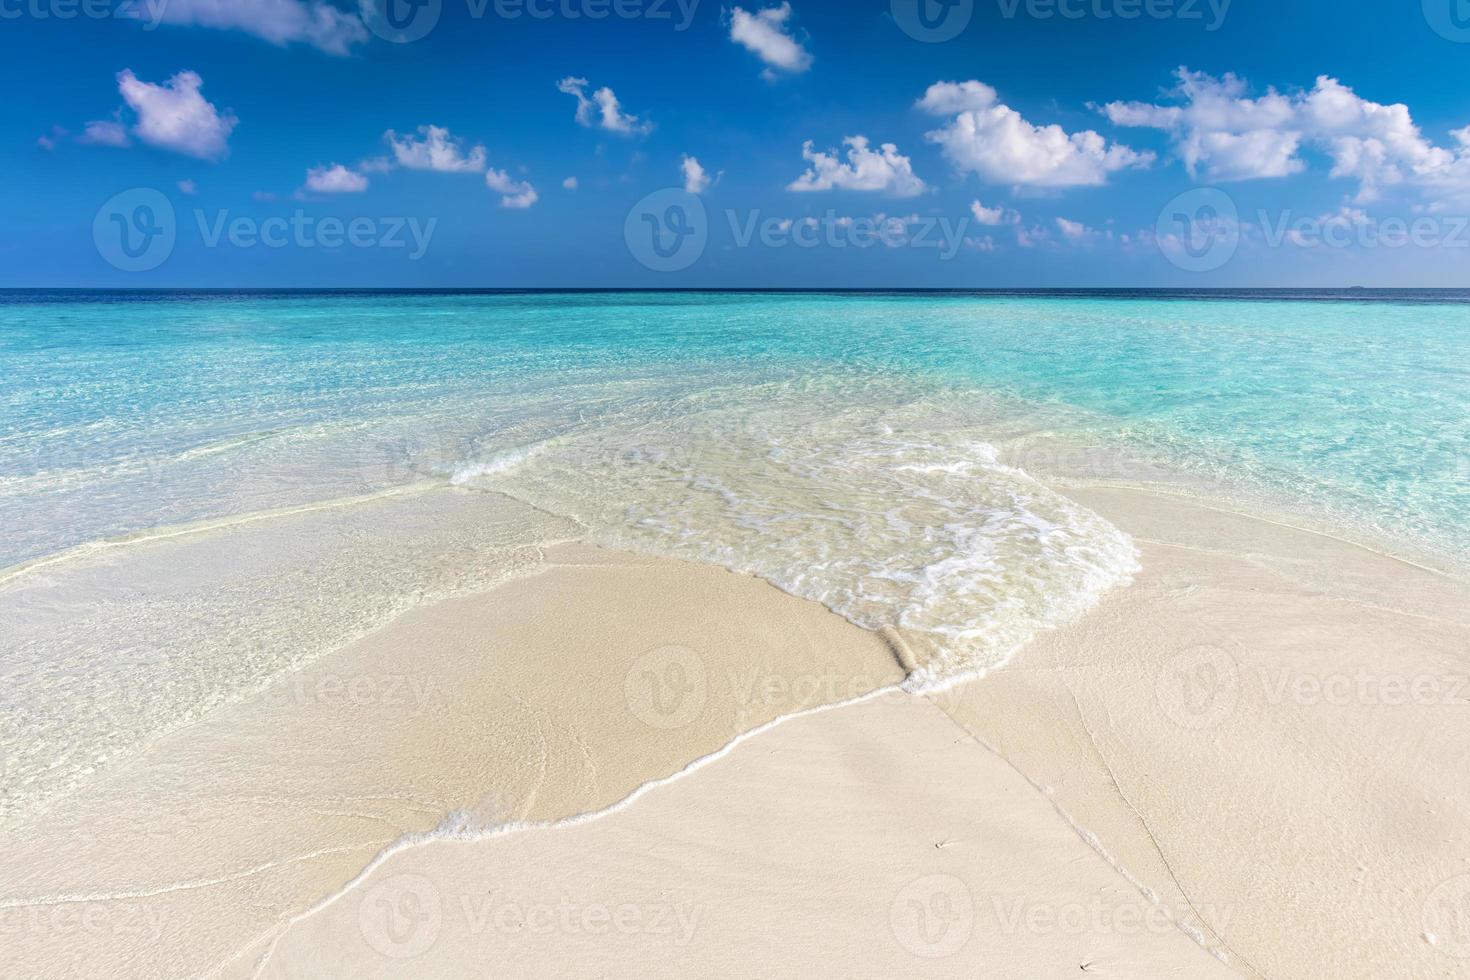 plage tropicale avec sable blanc et océan turquoise clair. Maldives photo